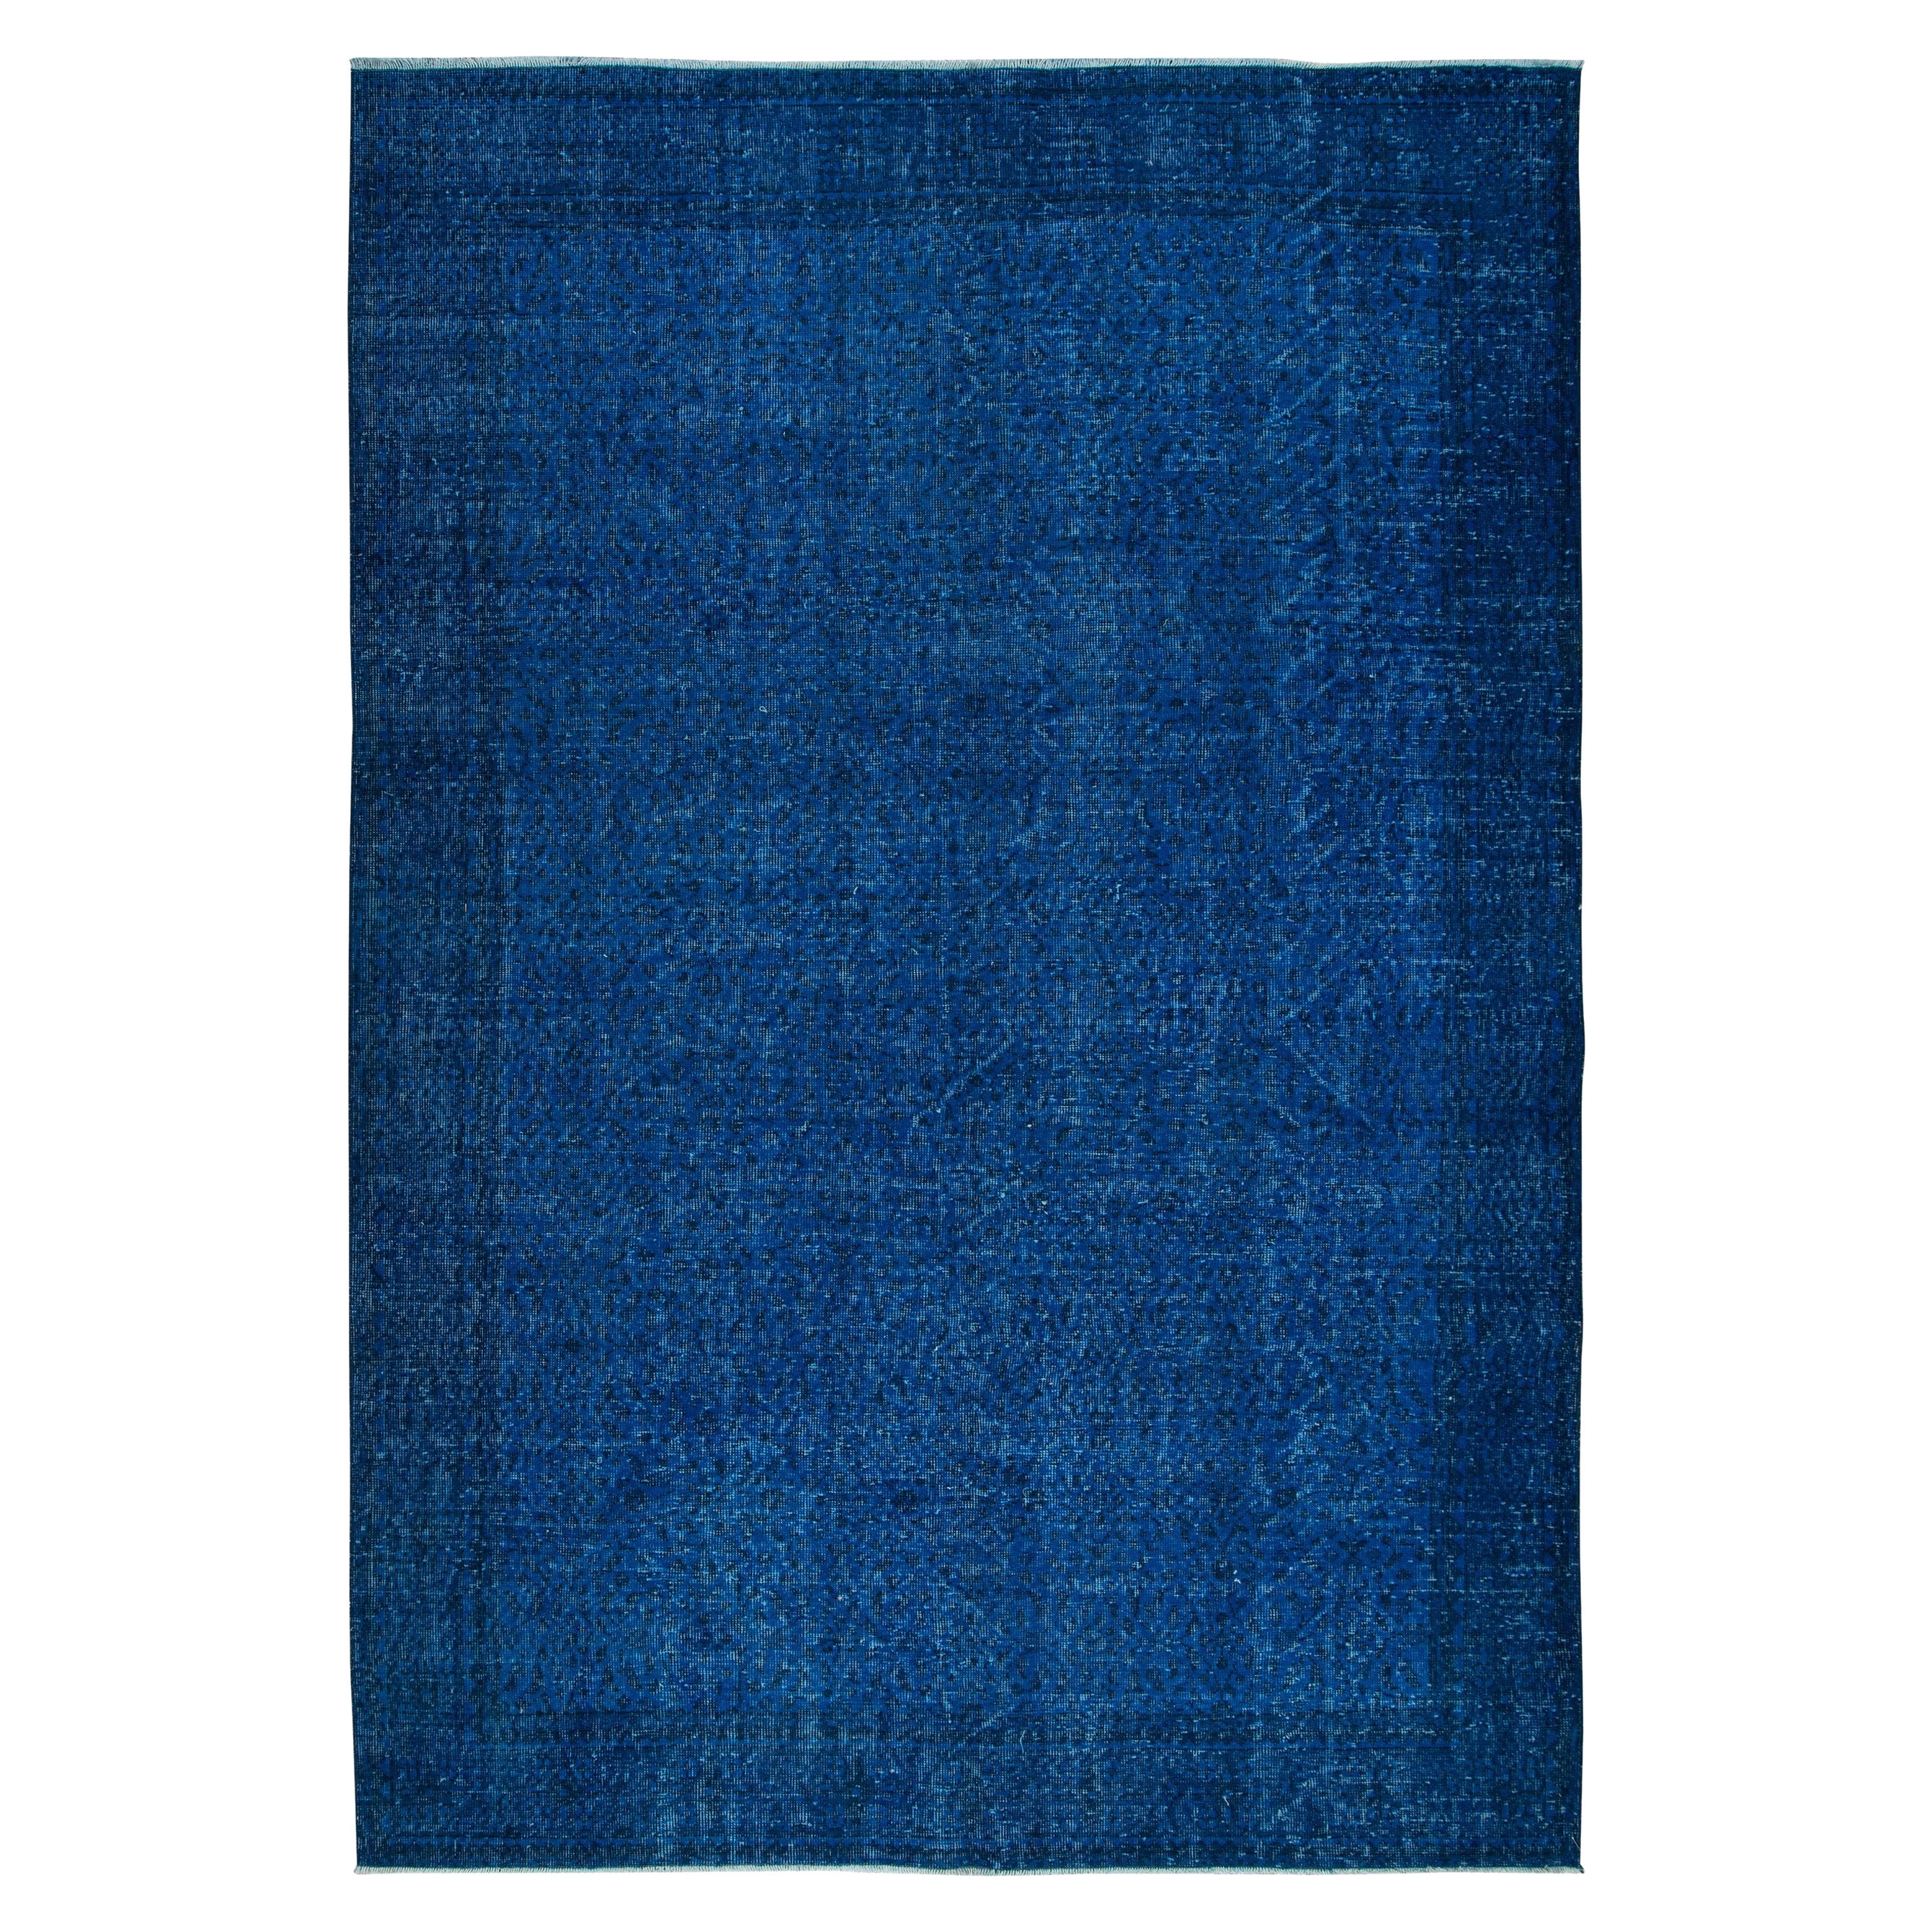 7x10 Ft Moderner blauer Teppich aus Wolle und Baumwolle, handgeknüpft in der Türkei